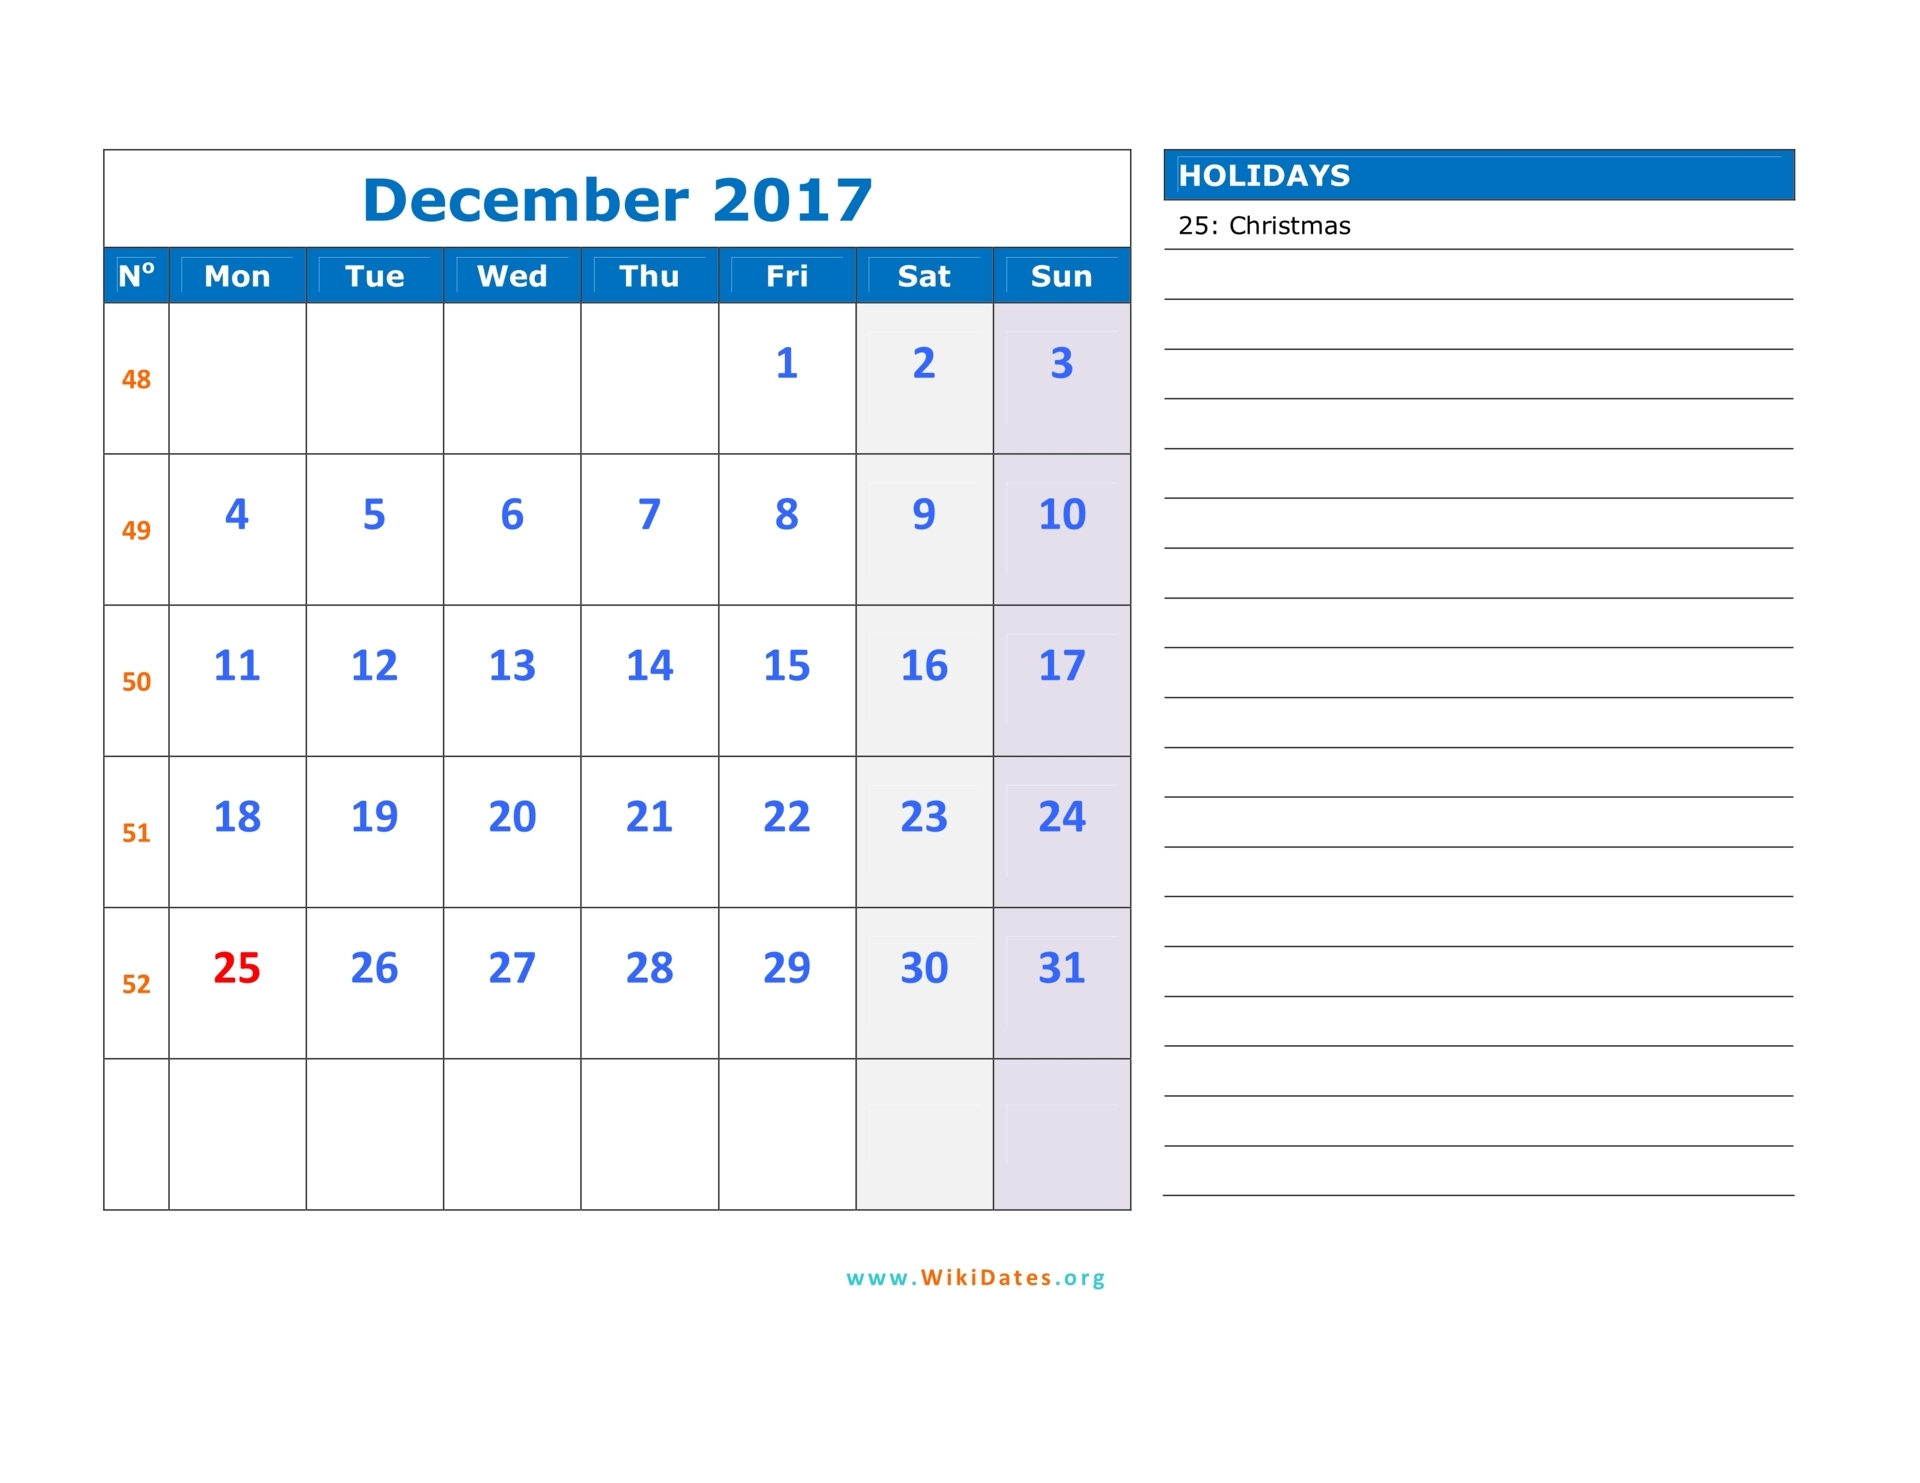 December 2017 Calendar WikiDates